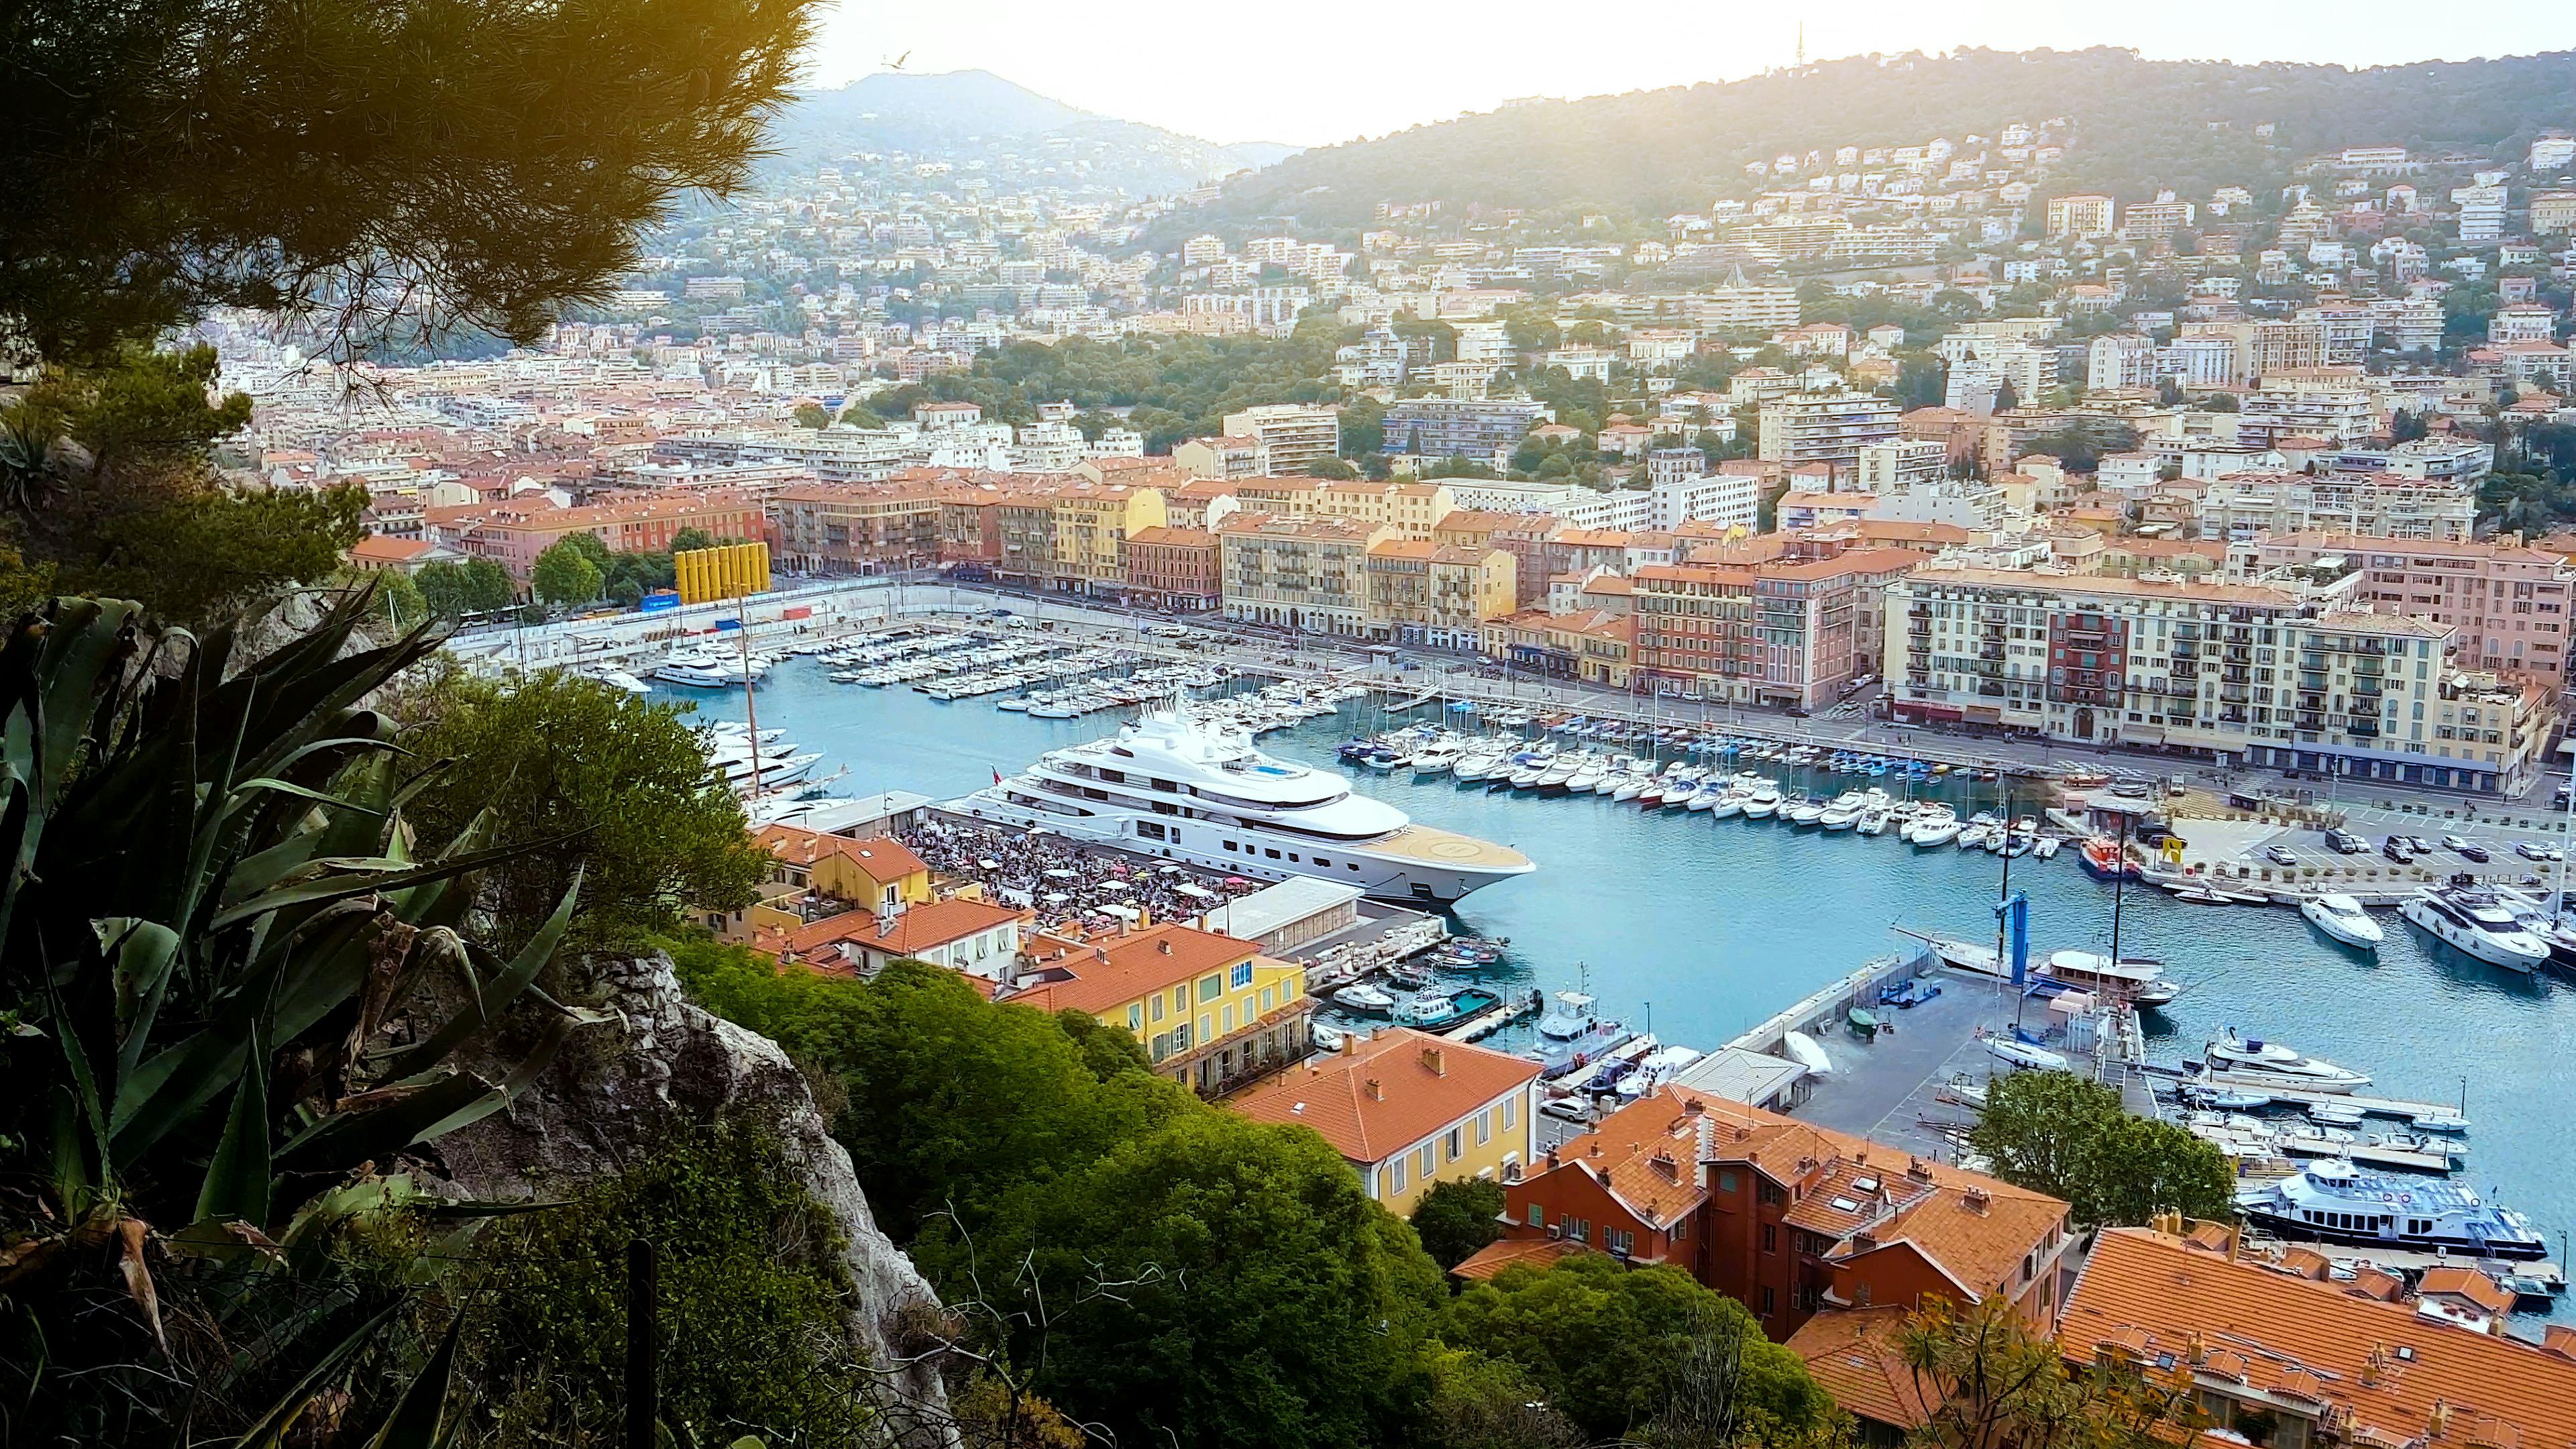 Excursão privada a Eze e Monte-Carlo saindo dos portos de Nice ou Villefranche